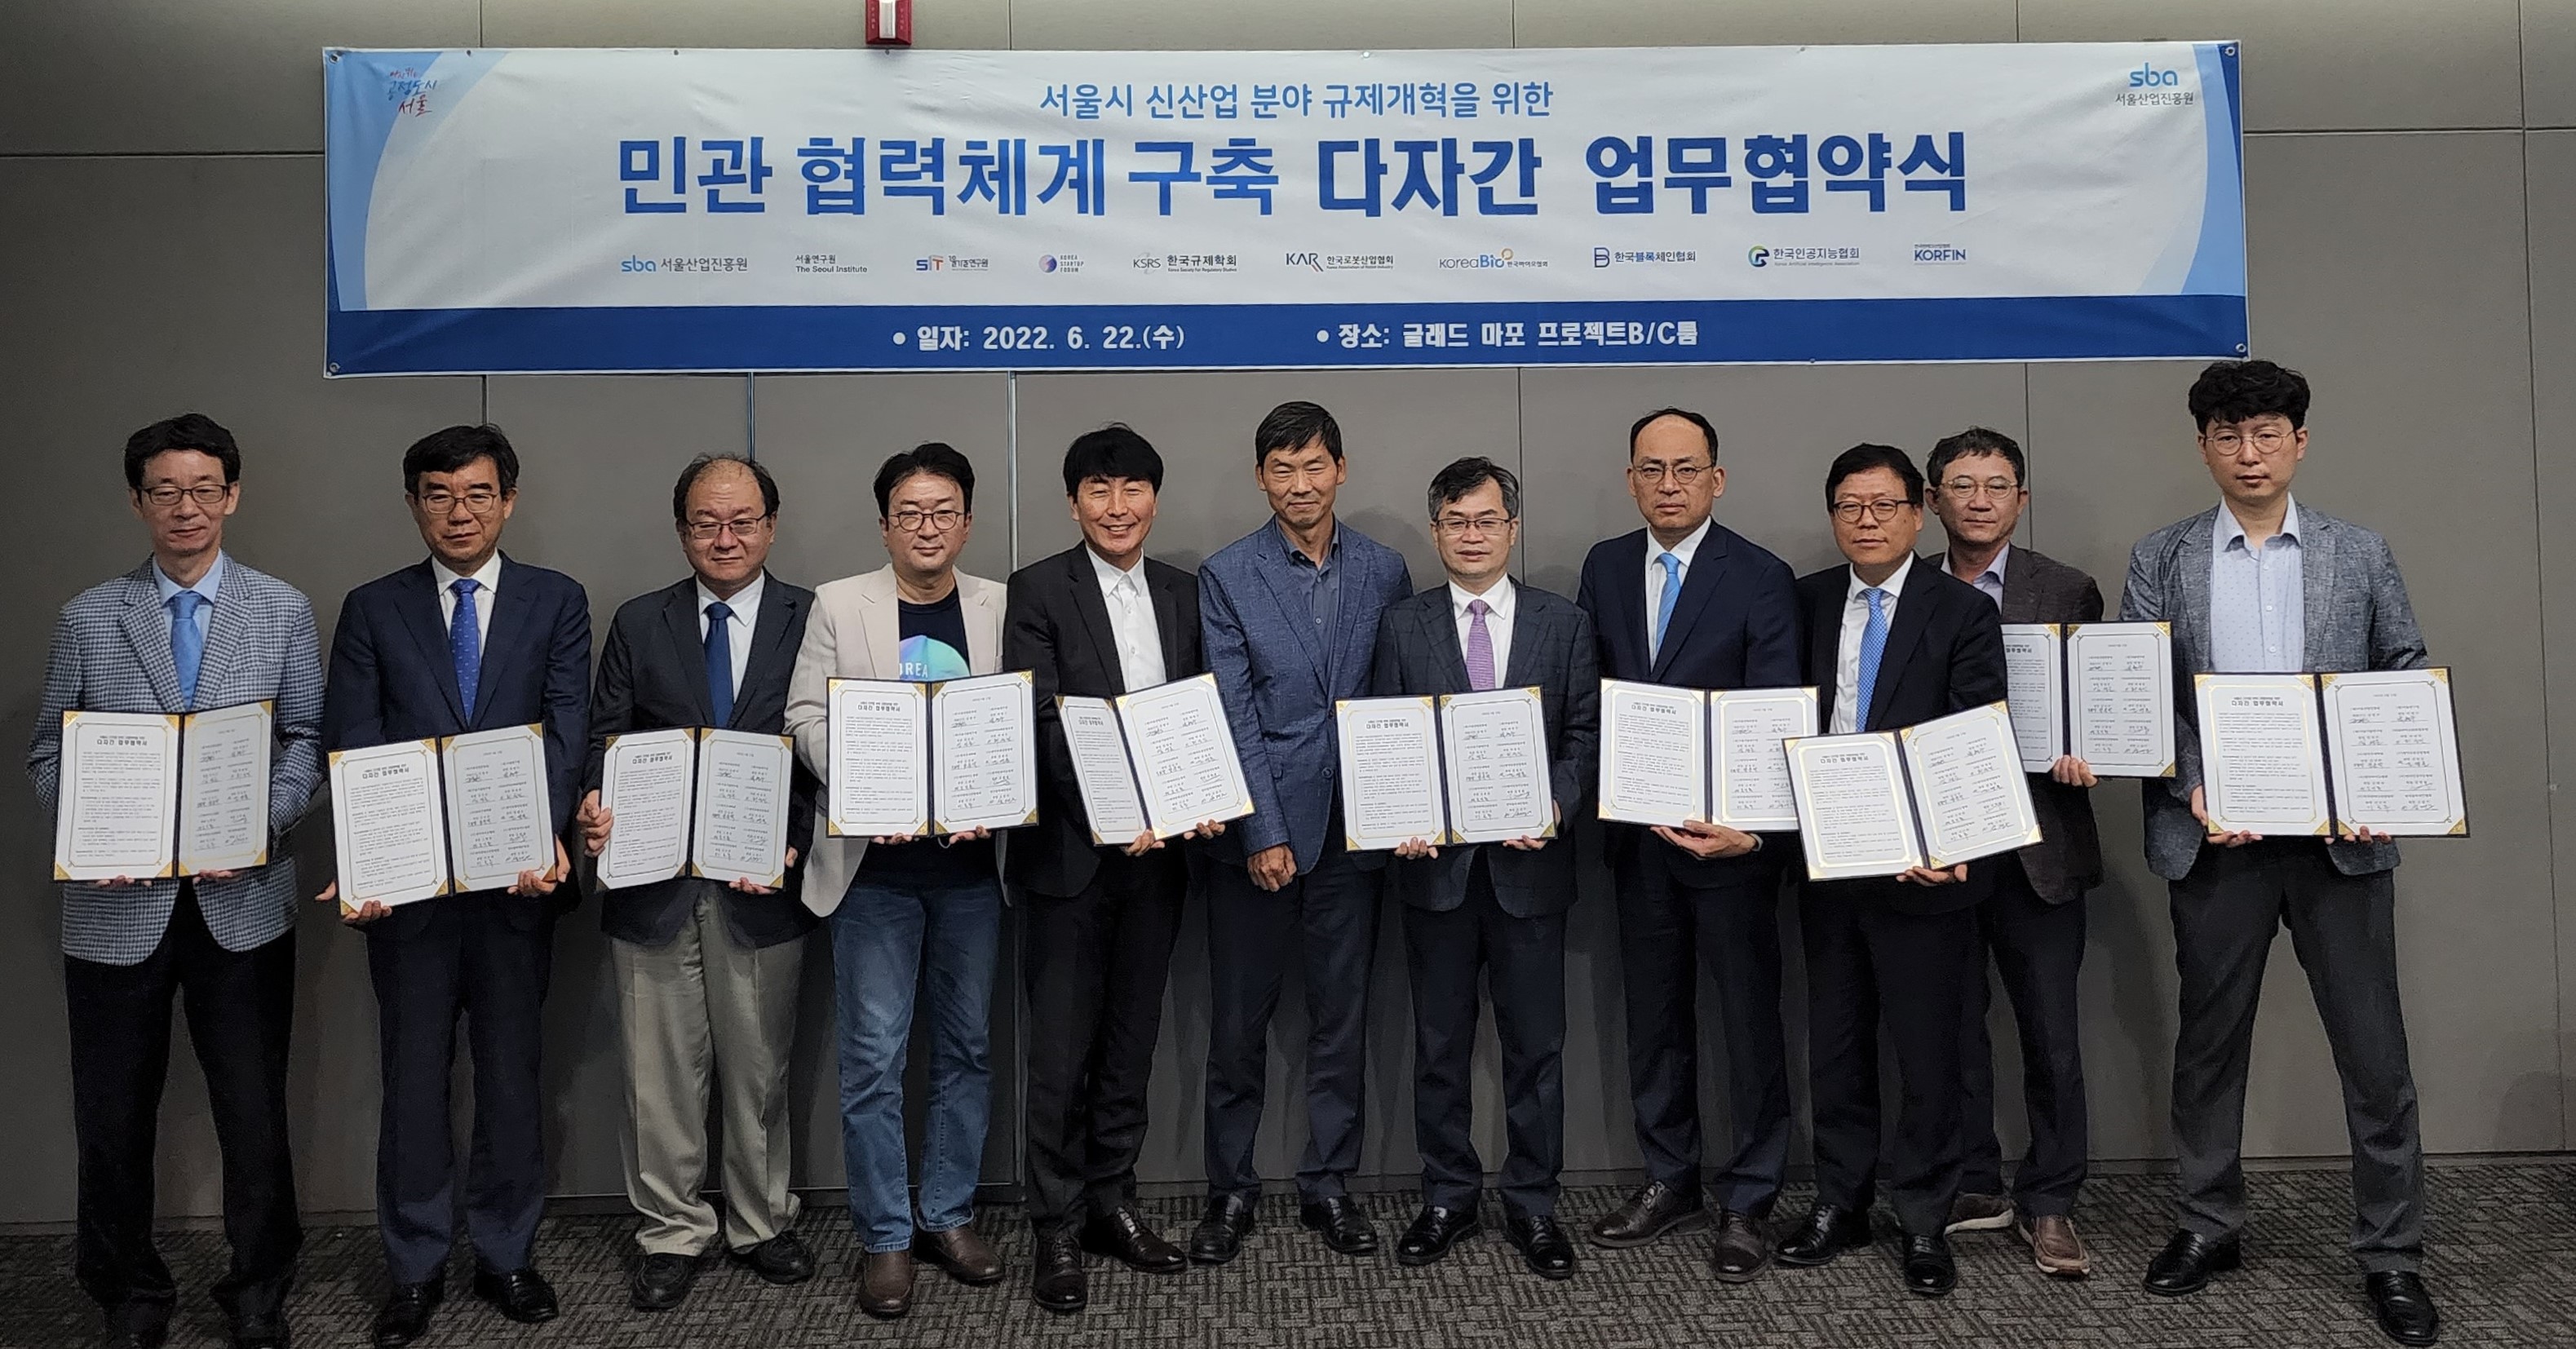 서울시 신산업 분야 규제개혁을 위한 다자간 업무협약식 체결